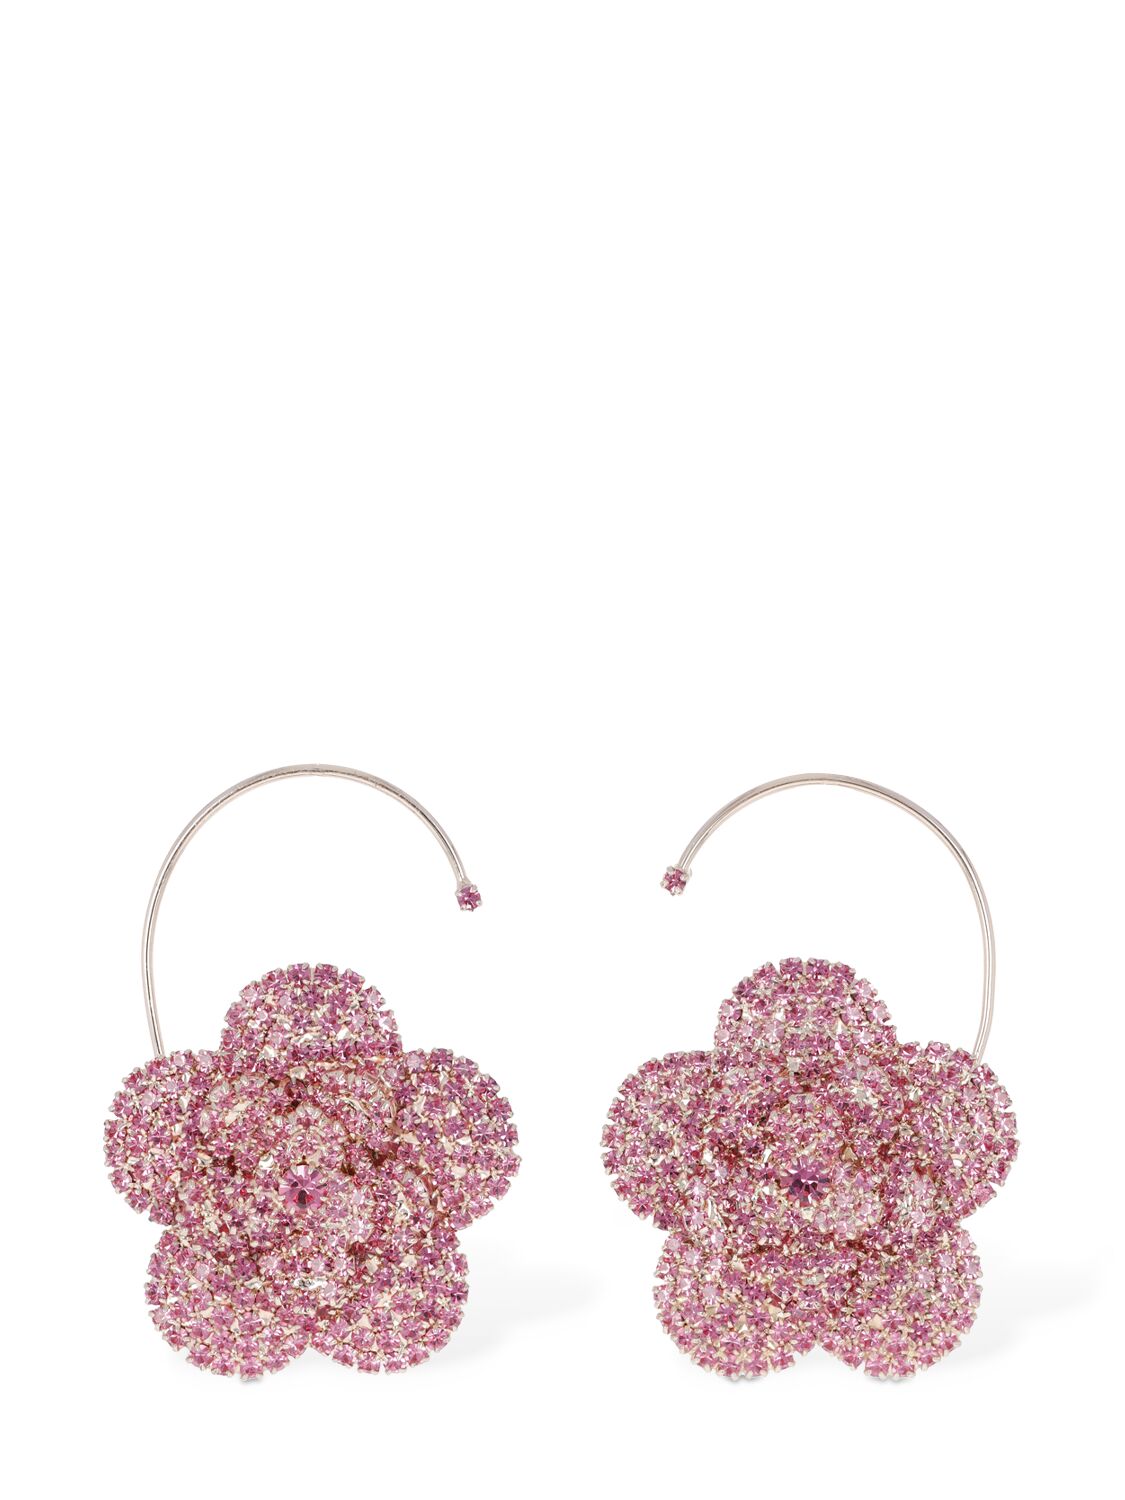 Magda Butrym Pink Crystal Flower Earrings W/ Hook